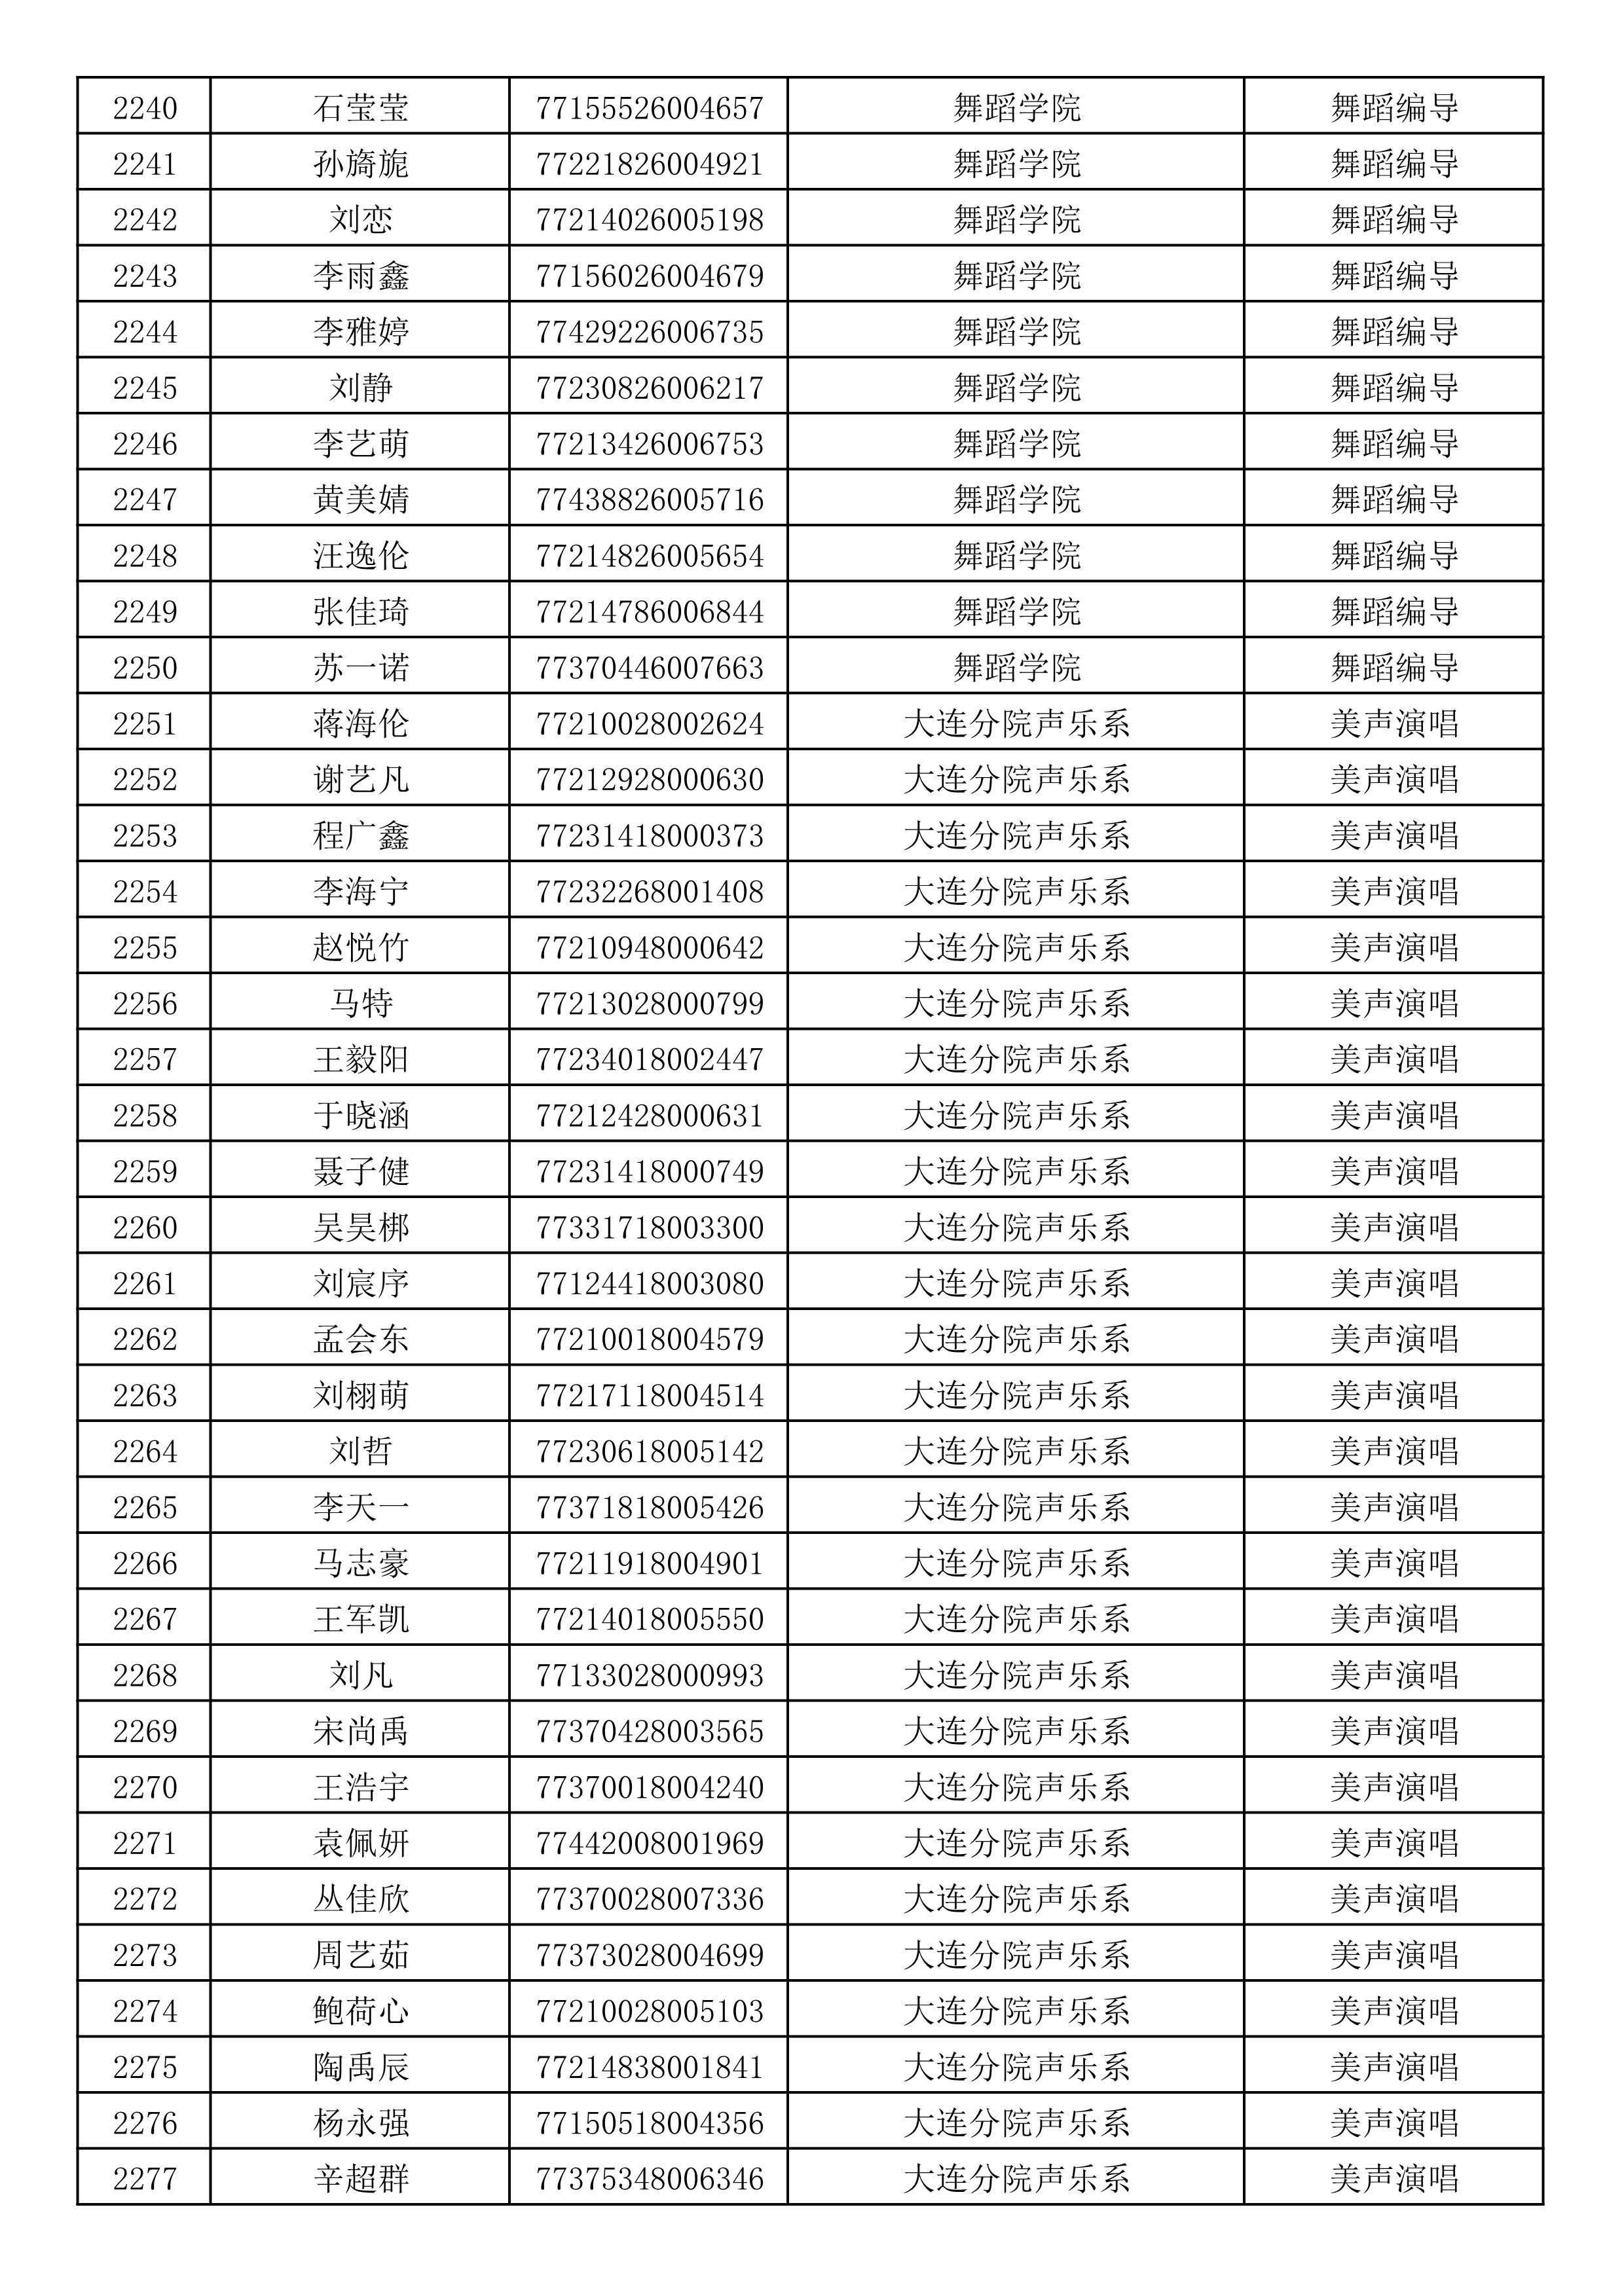 沈阳音乐学院2019年本科招生考试初试合格名单_60.jpg